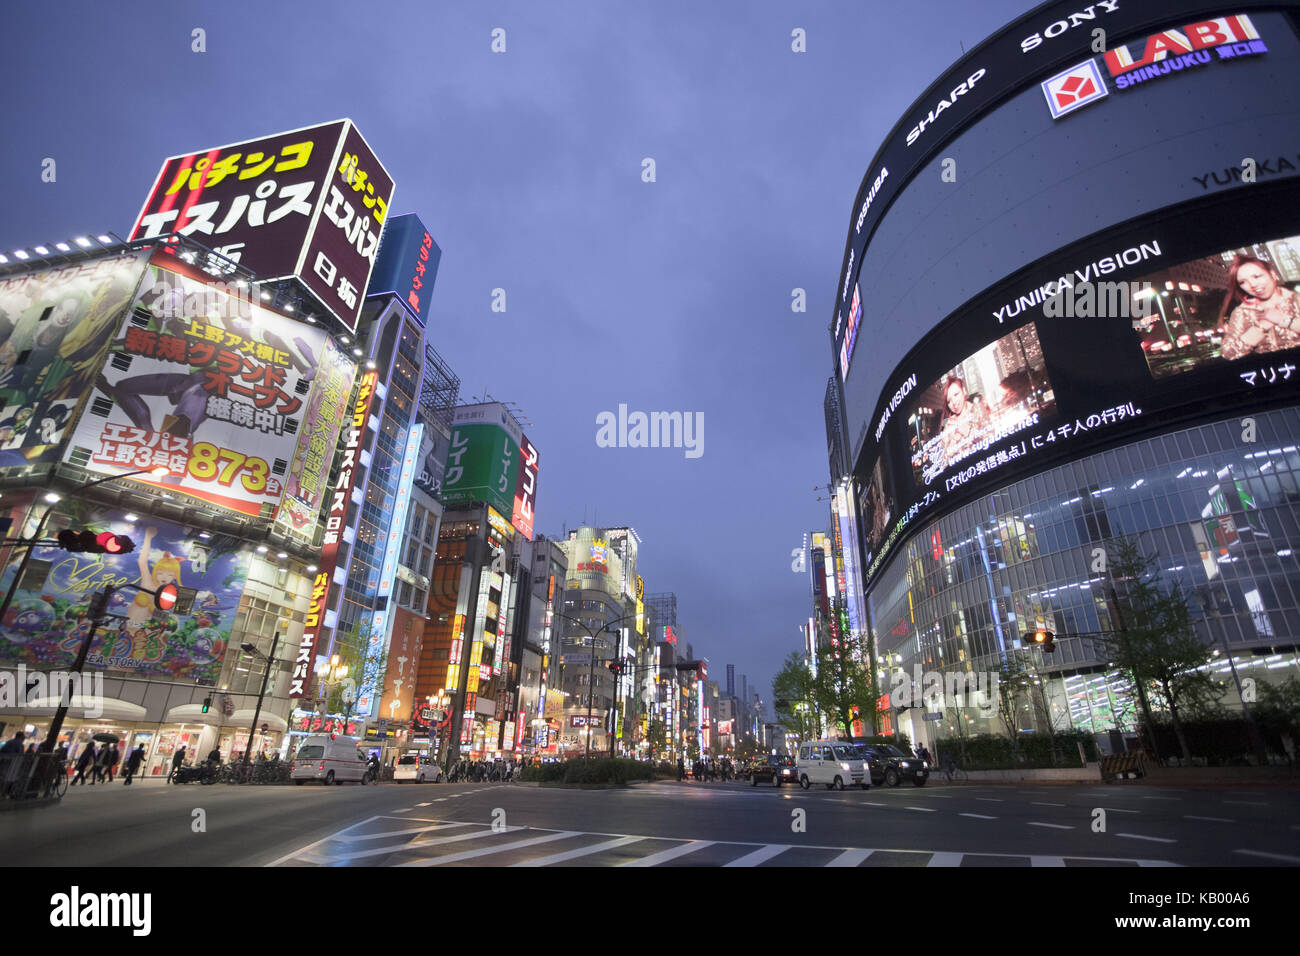 Japon, Tokyo, dans le quartier de shinjuku, Shinjuku avenue, crépuscule, Banque D'Images